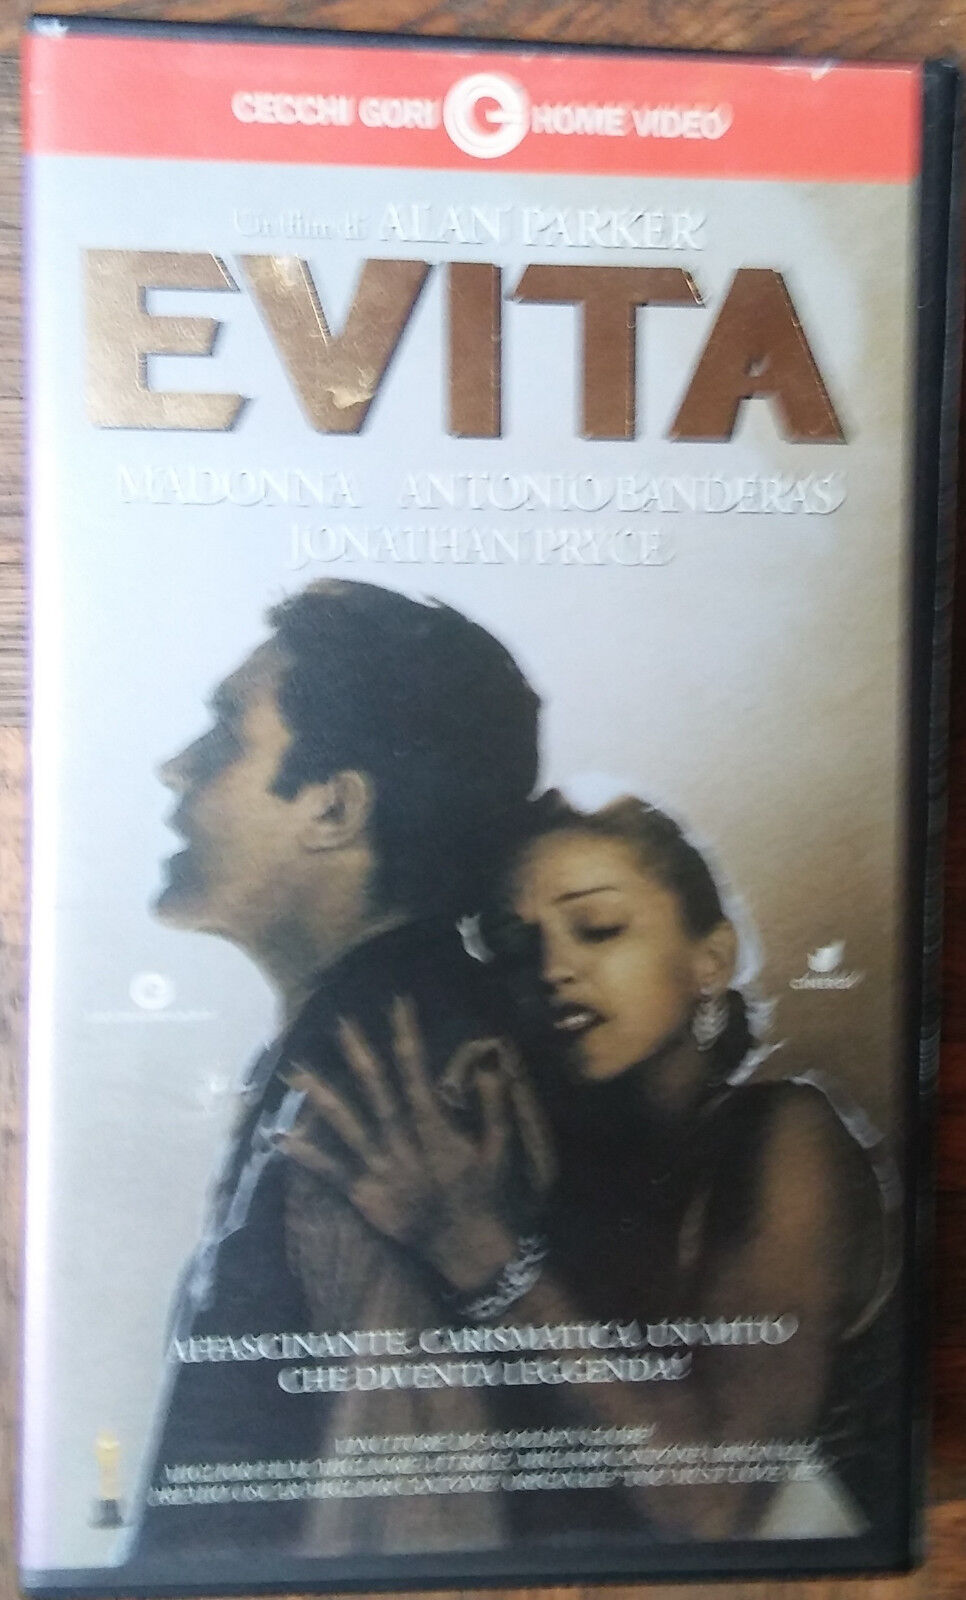 Evita - Cecchi Gori Home Video - VHS - R